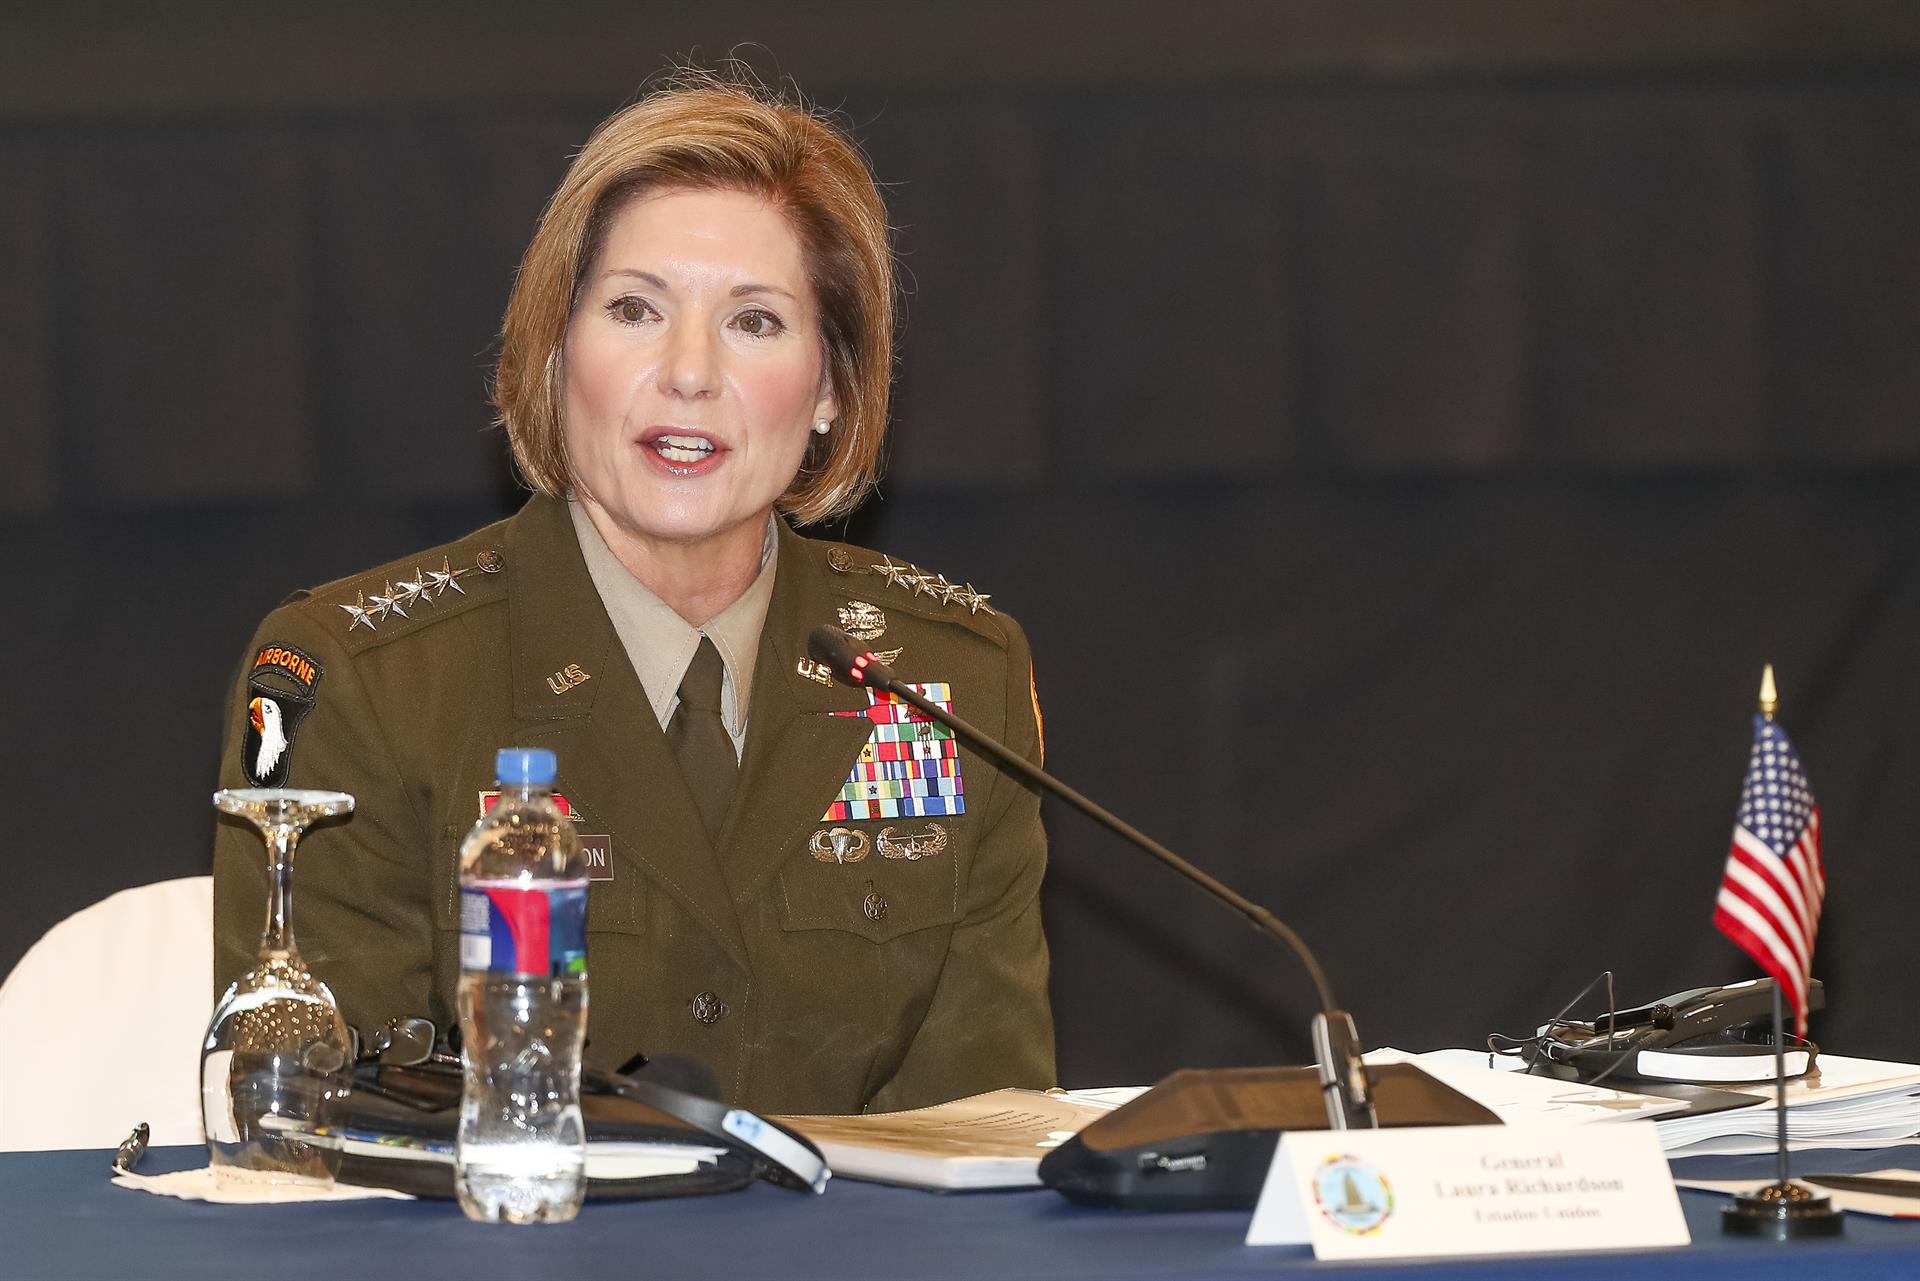 La jefa del Comando Sur de EE.UU. llega a Panamá para reunión sobre seguridad